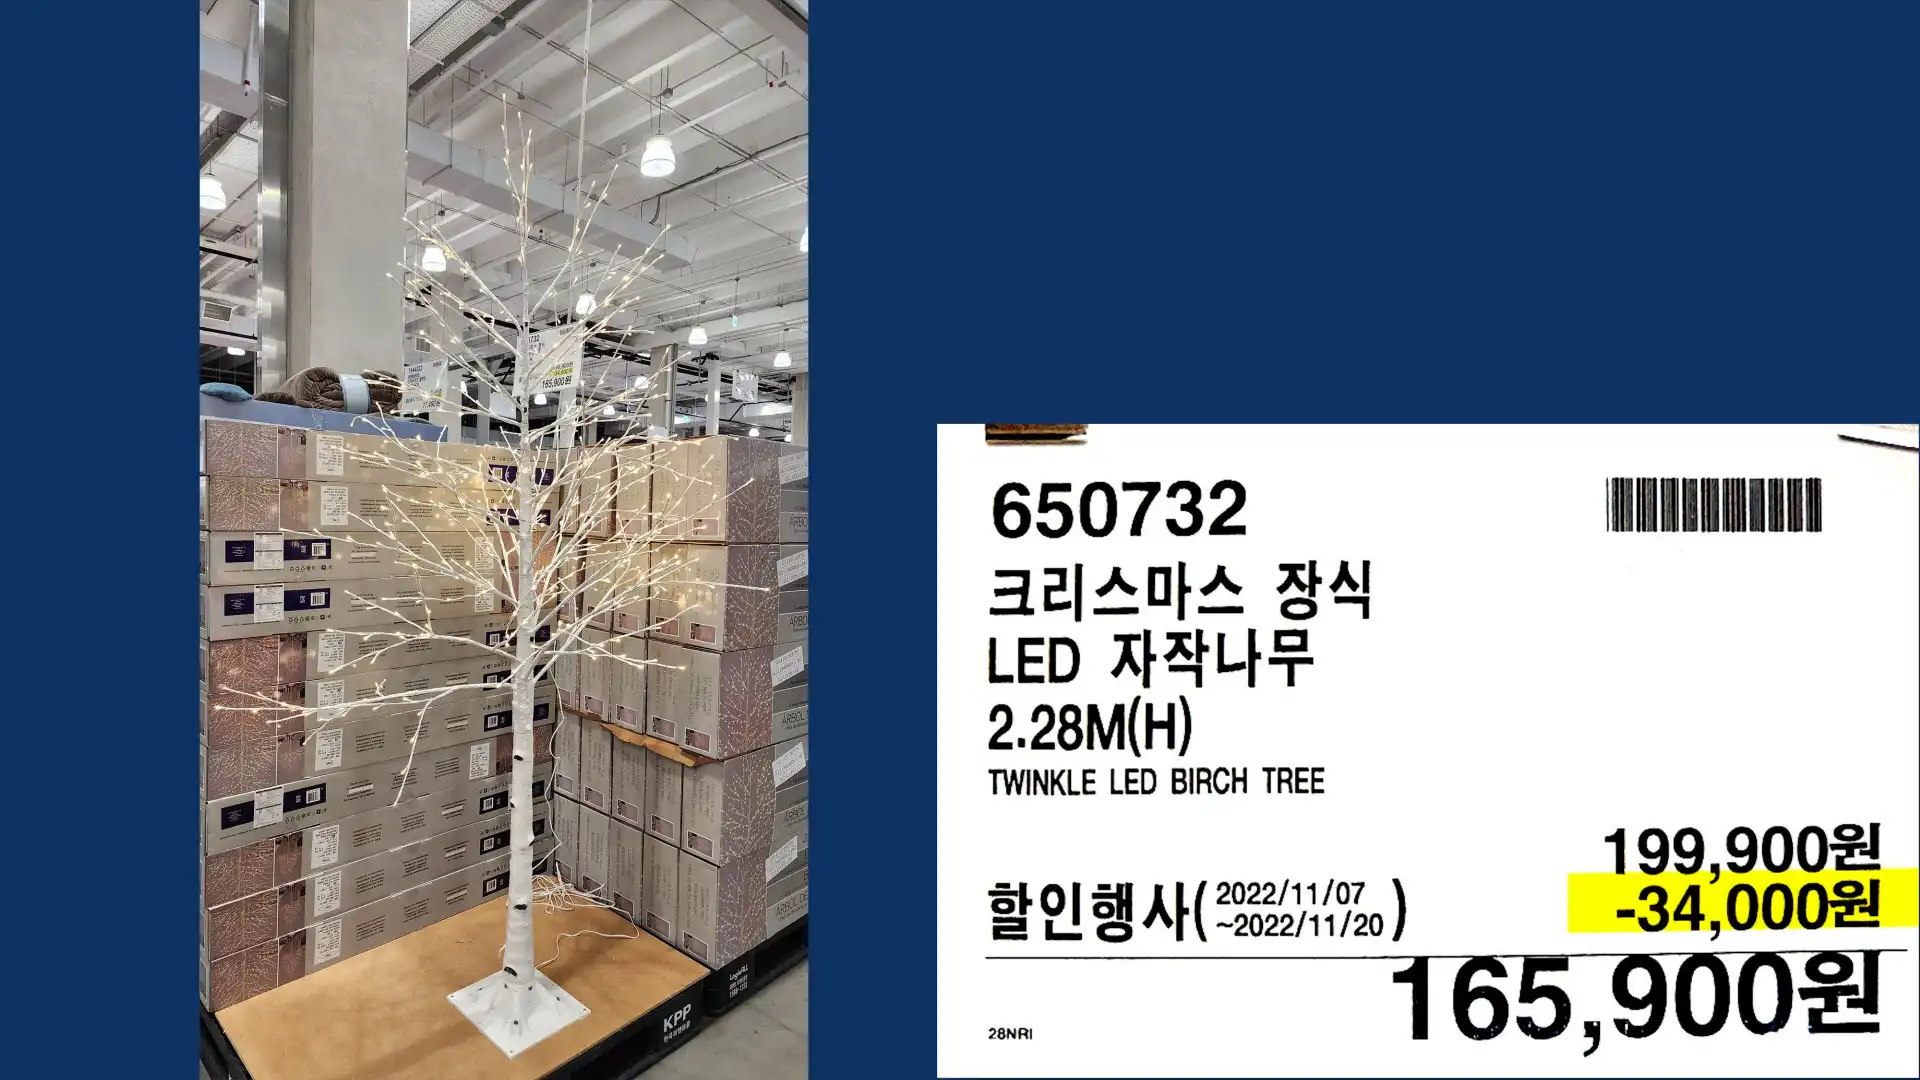 크리스마스 장식
LED 자작나무
2.28M(H)
TWINKLE LED BIRCH TREE
165&#44;900원